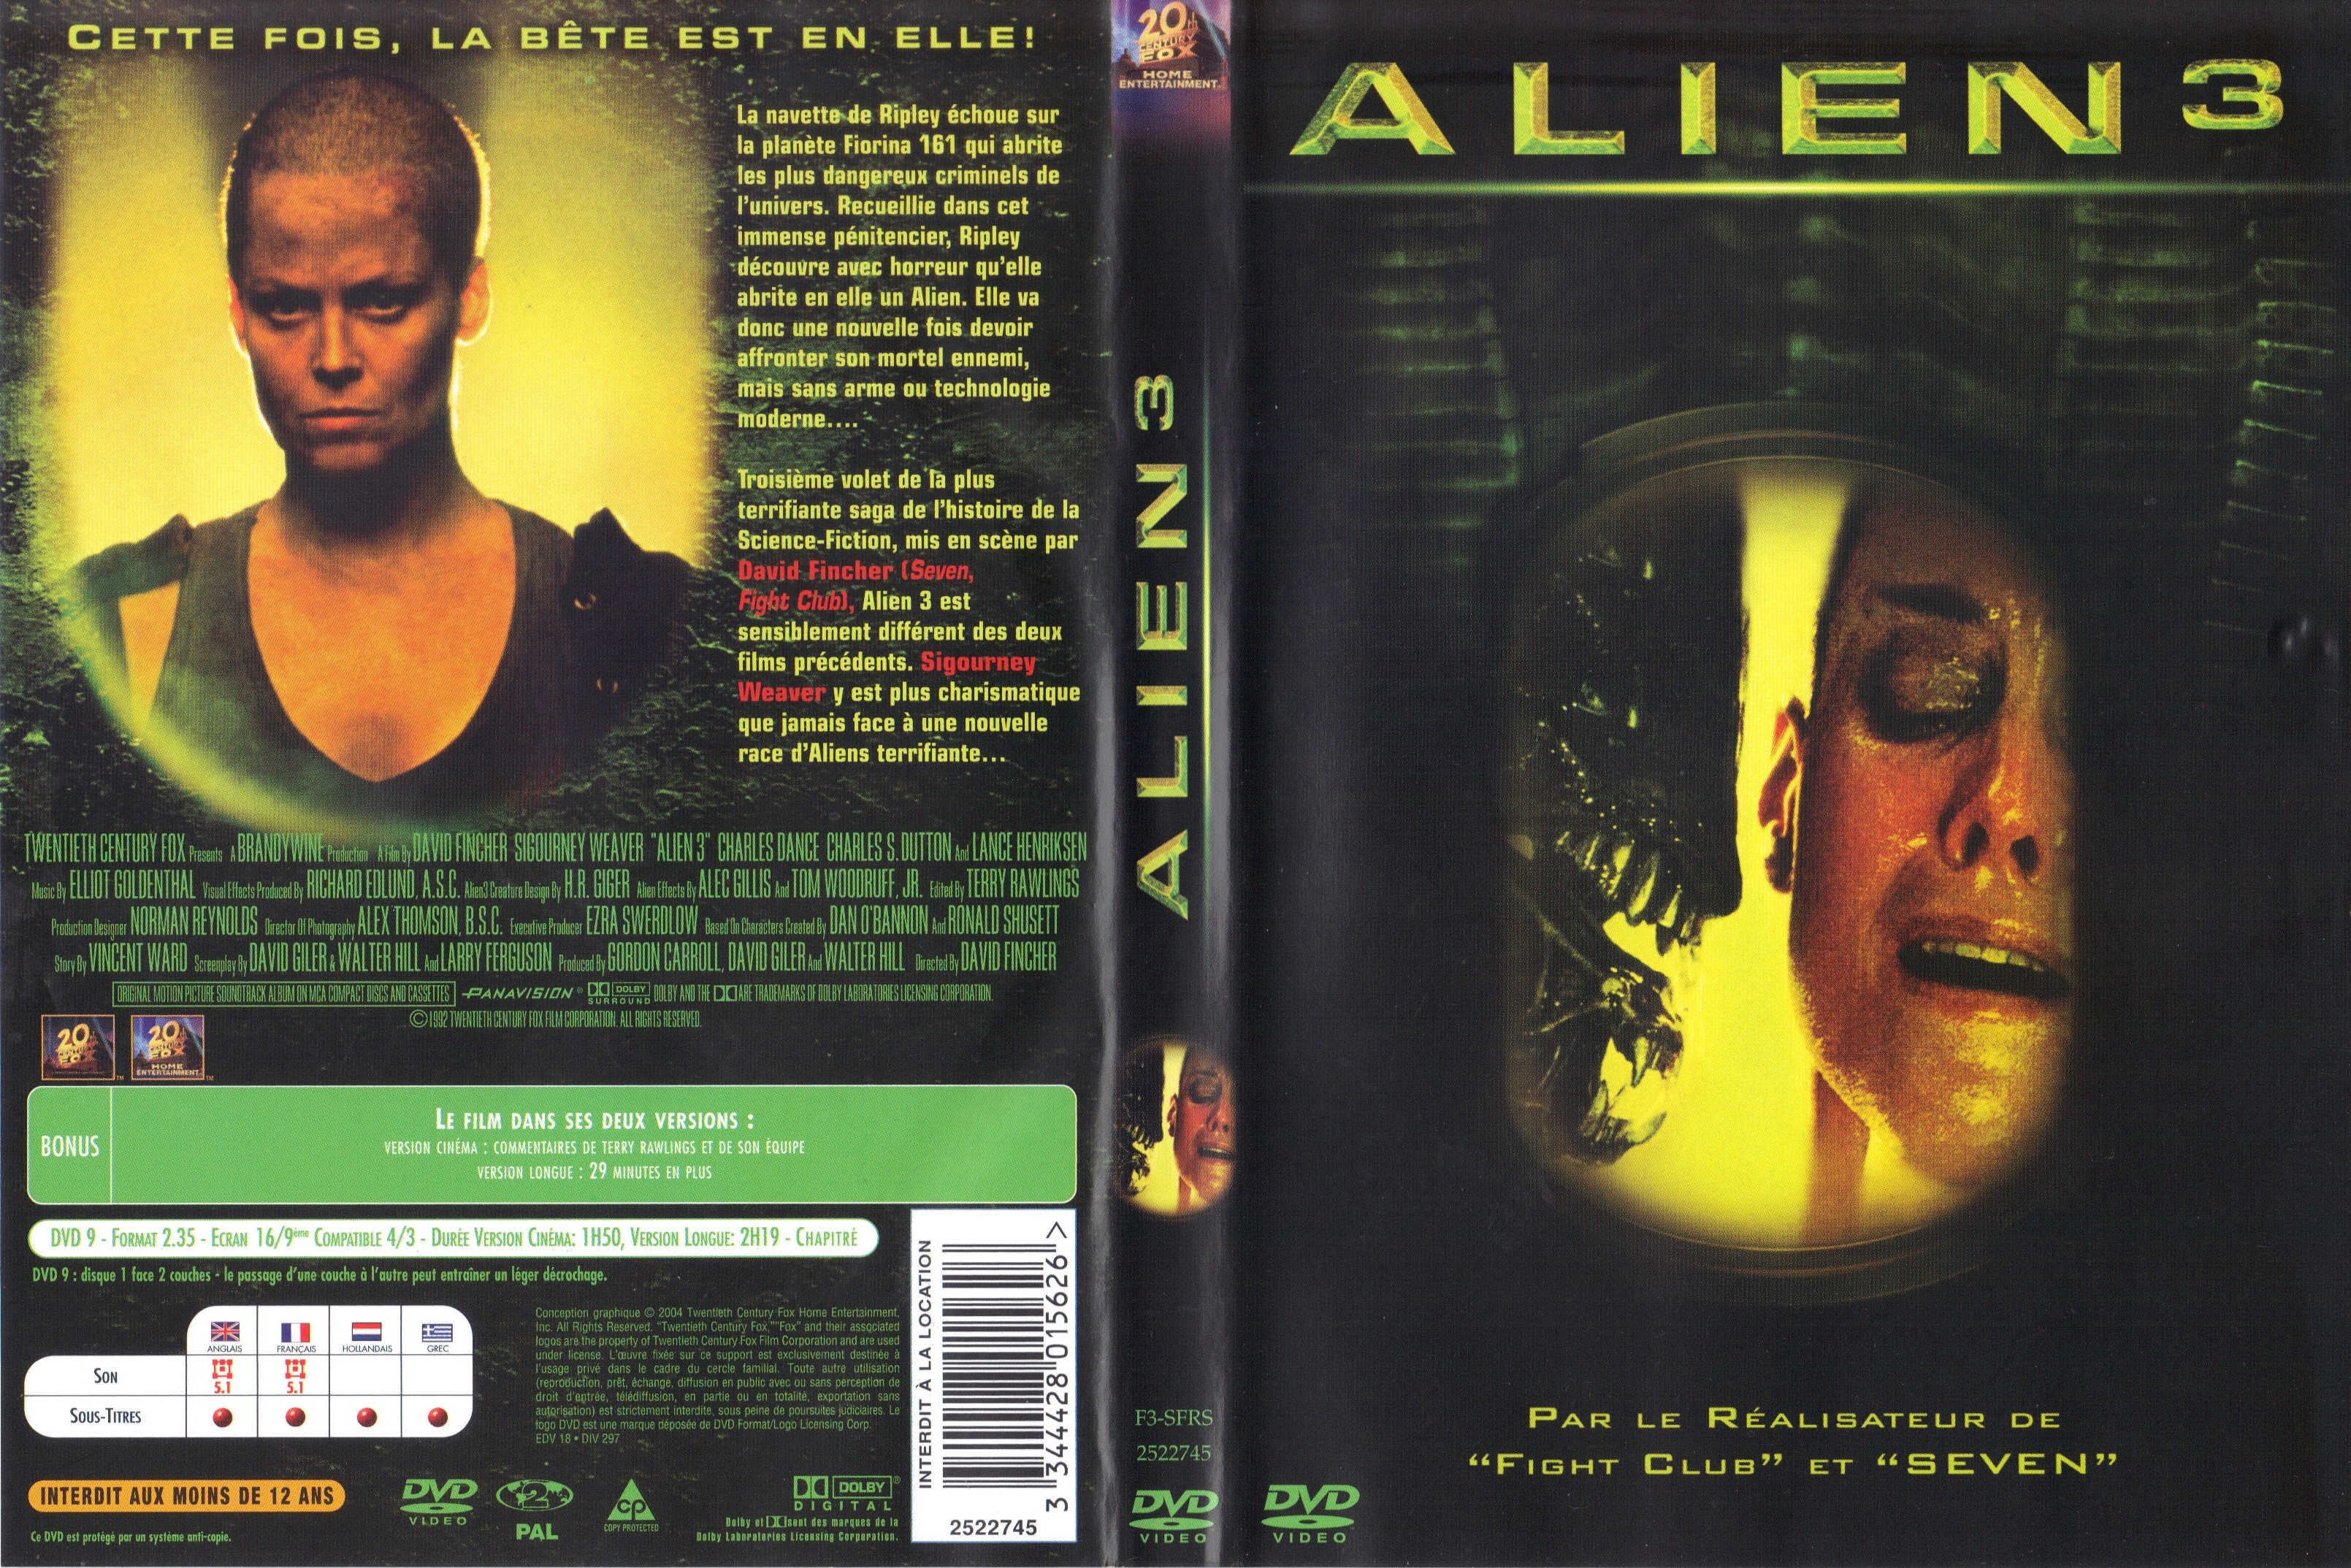 Jaquette DVD Alien 3 v4